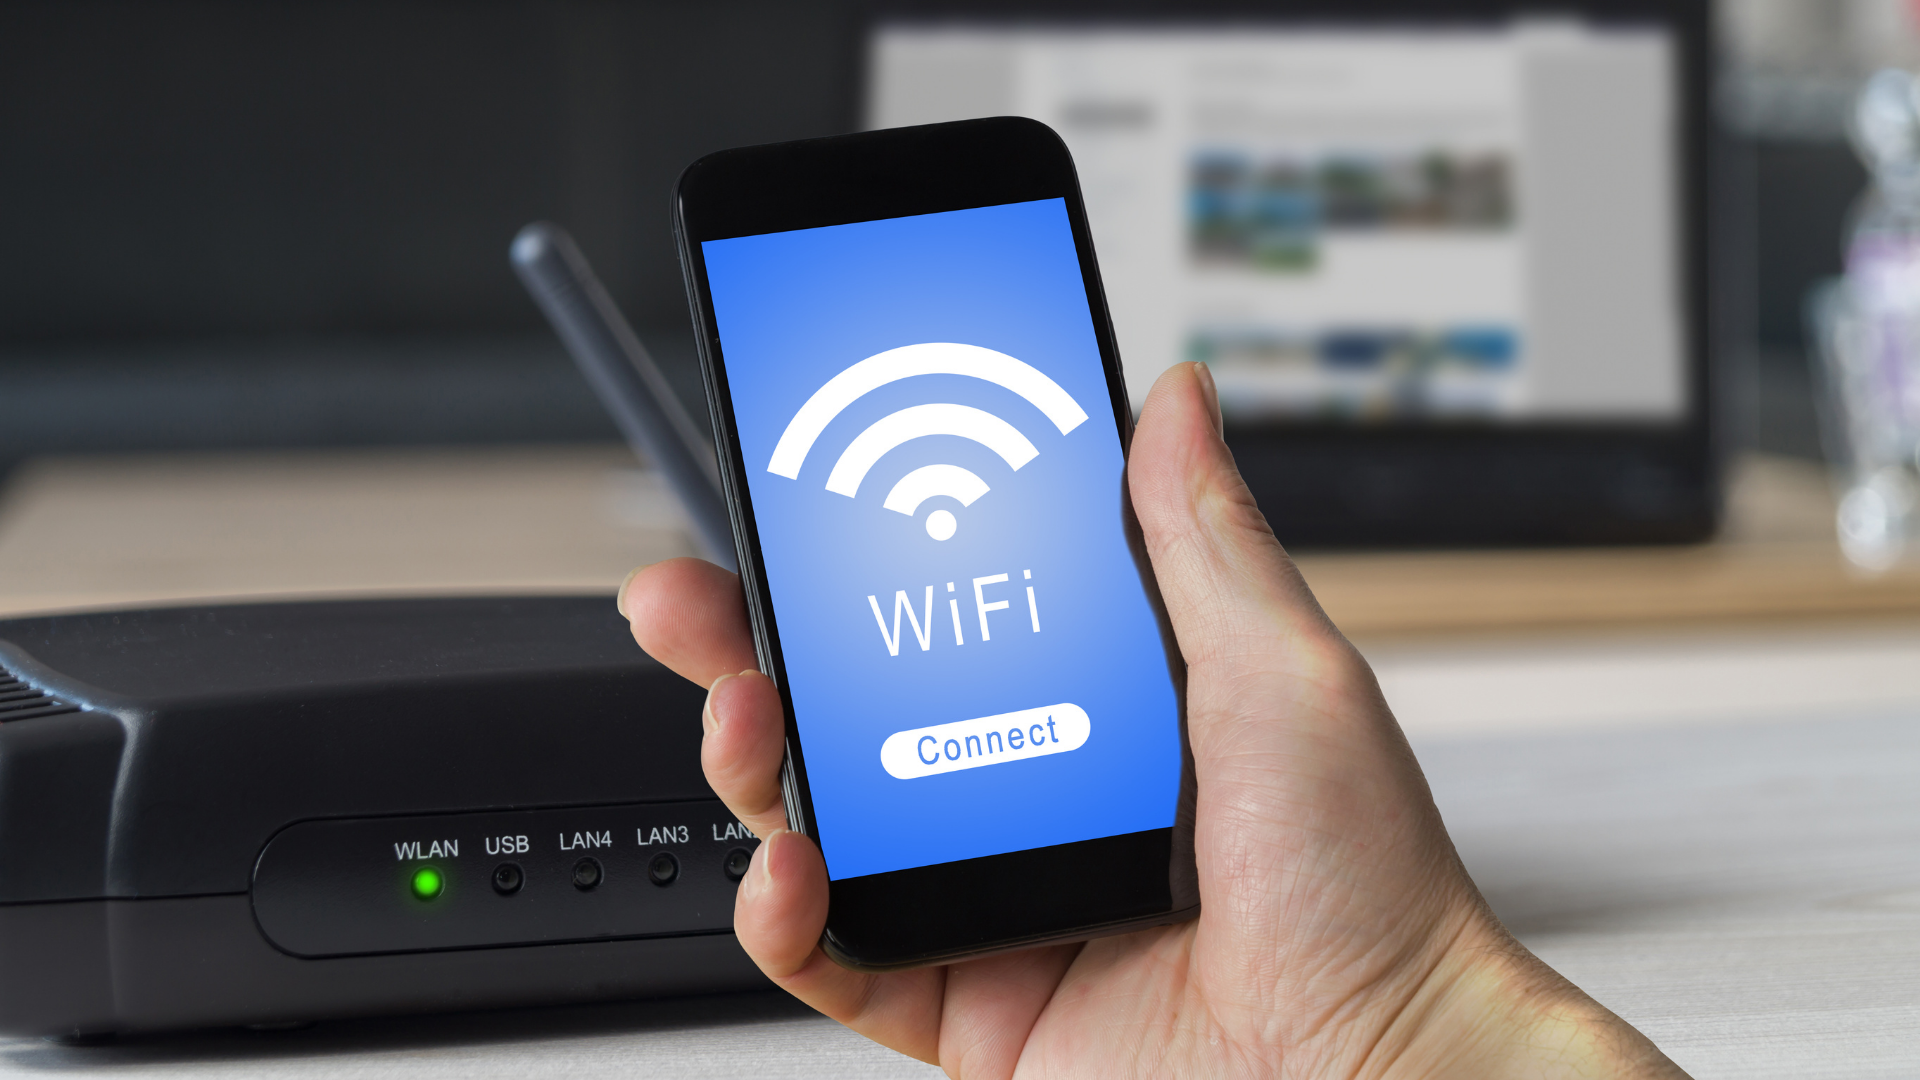 โทรศัพท์เชื่อมต่อ Wi-Fi ไม่ได้ Realme - ร้านซ่อมโทรศัพท์มือถือ ออนไลน์ - ร้านซ่อมโทรศัพท์มือถือ ออนไลน์